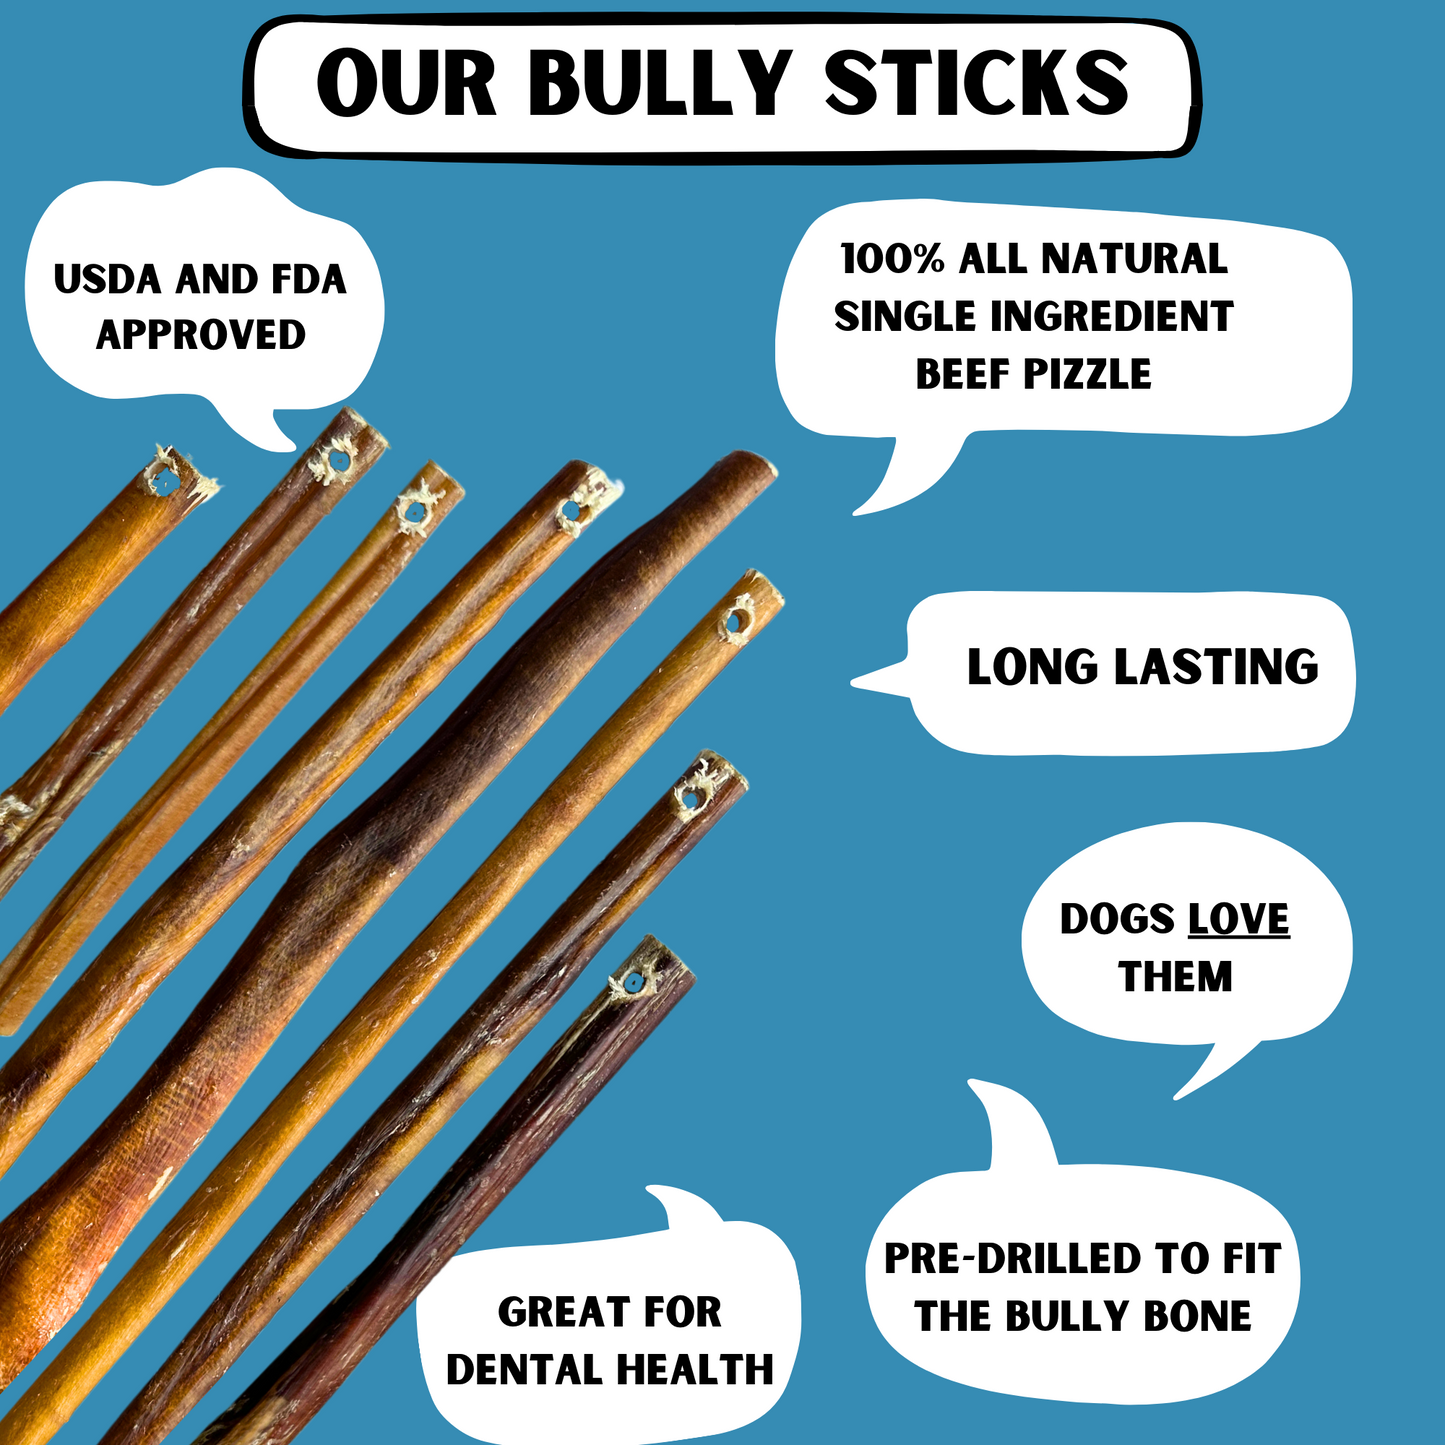 7" Standard Bully Sticks - Refill